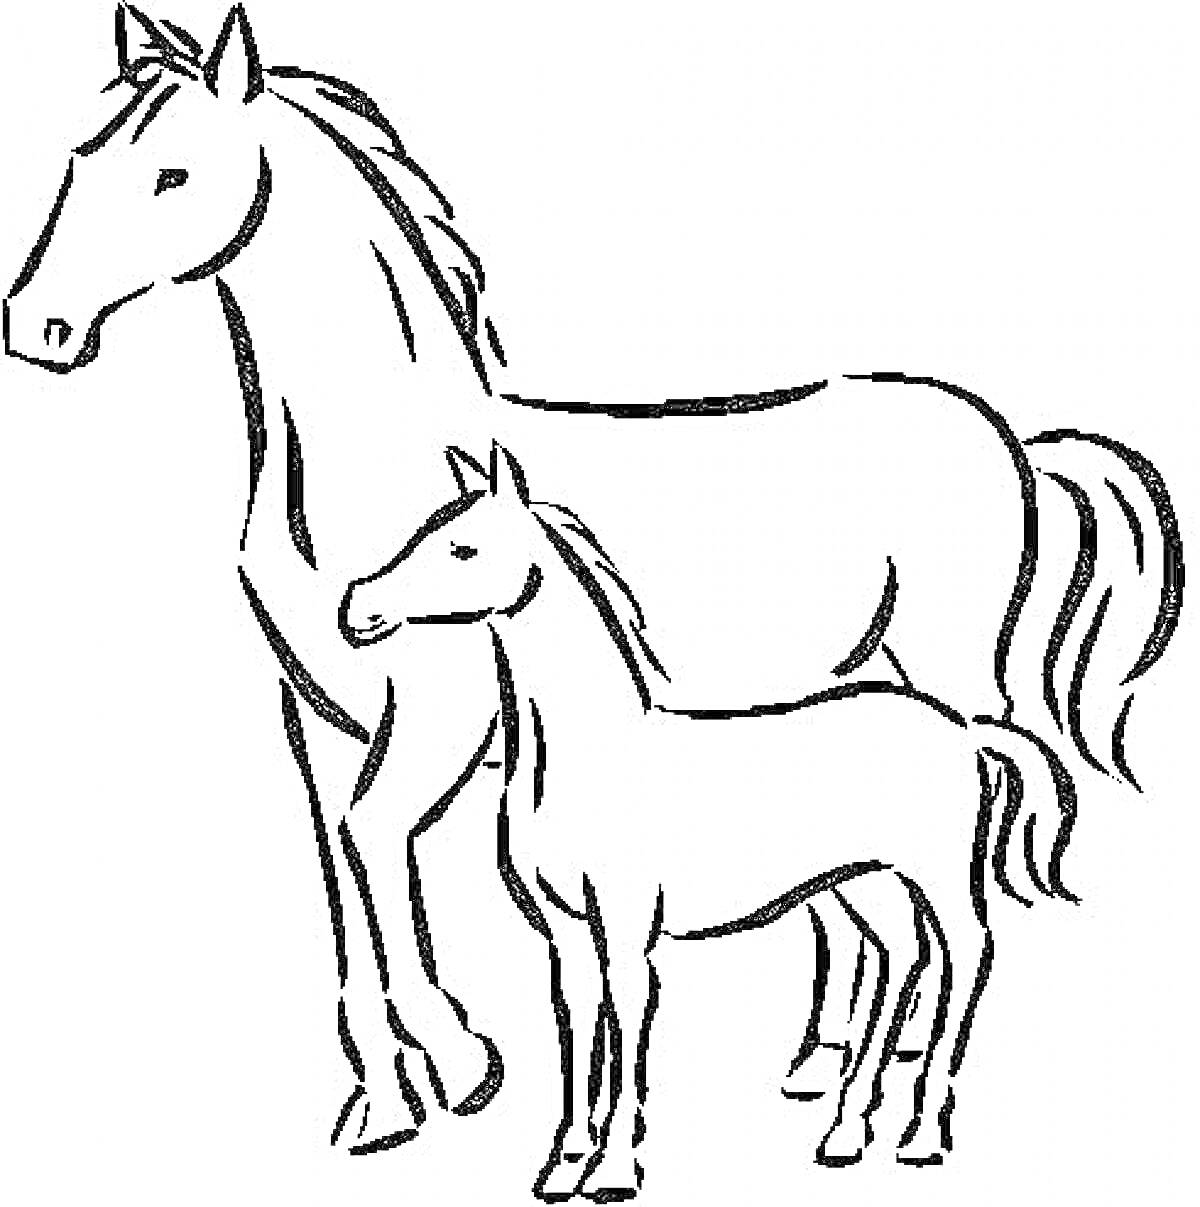 Раскраска Лошадь и жеребенок